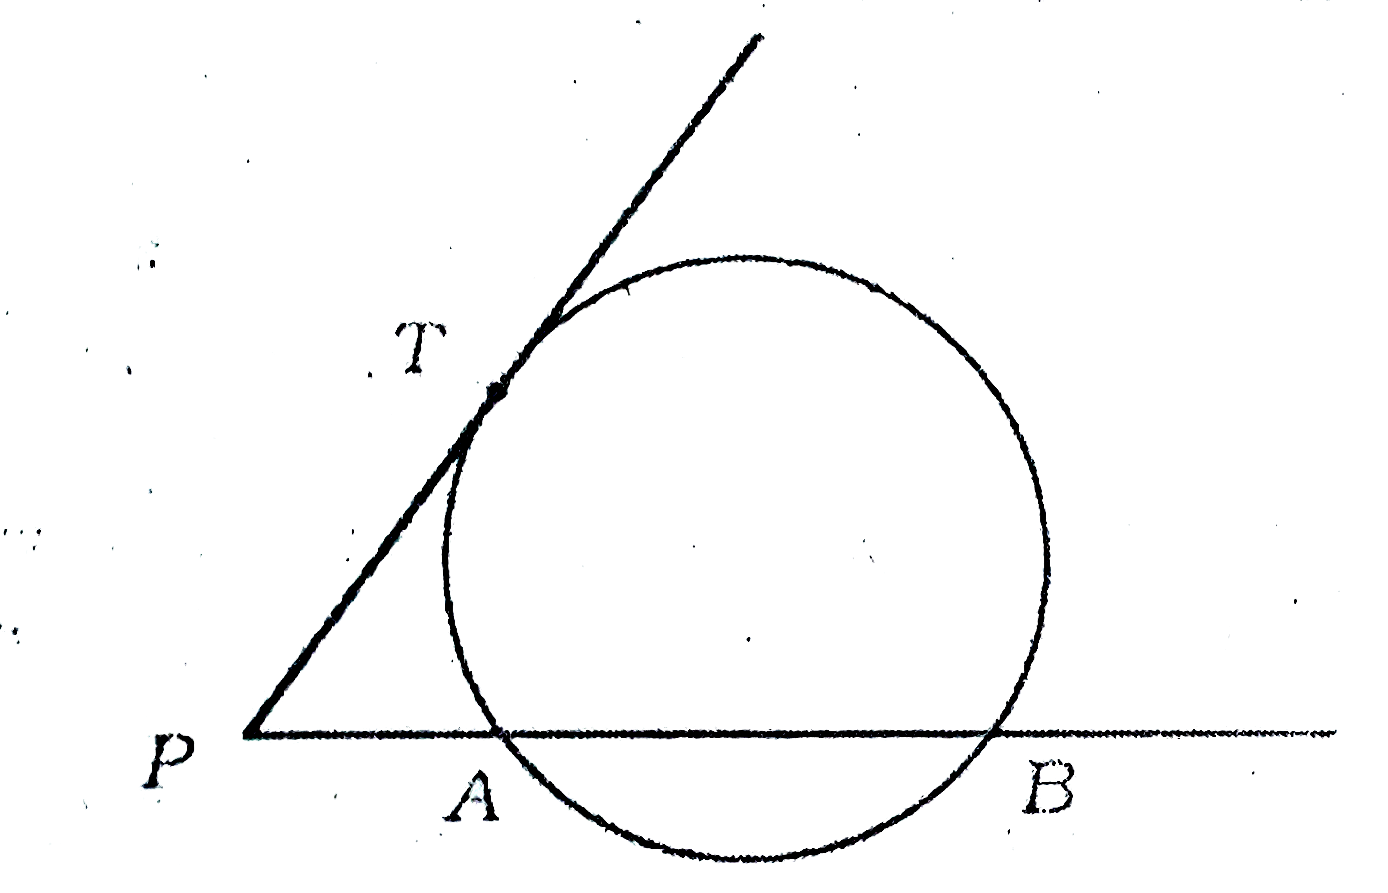 दिये चित्र  में PAB  एक वृत्त  की छेदक   रेखा है , जो  वृत्त  को A व  B  पर  प्रतिच्छेद  करती है | तथा  बिन्दु  T पर  PT  एक स्पर्श  रेखा है | सिध्द कीजिए  PA. PB = PT^(2)